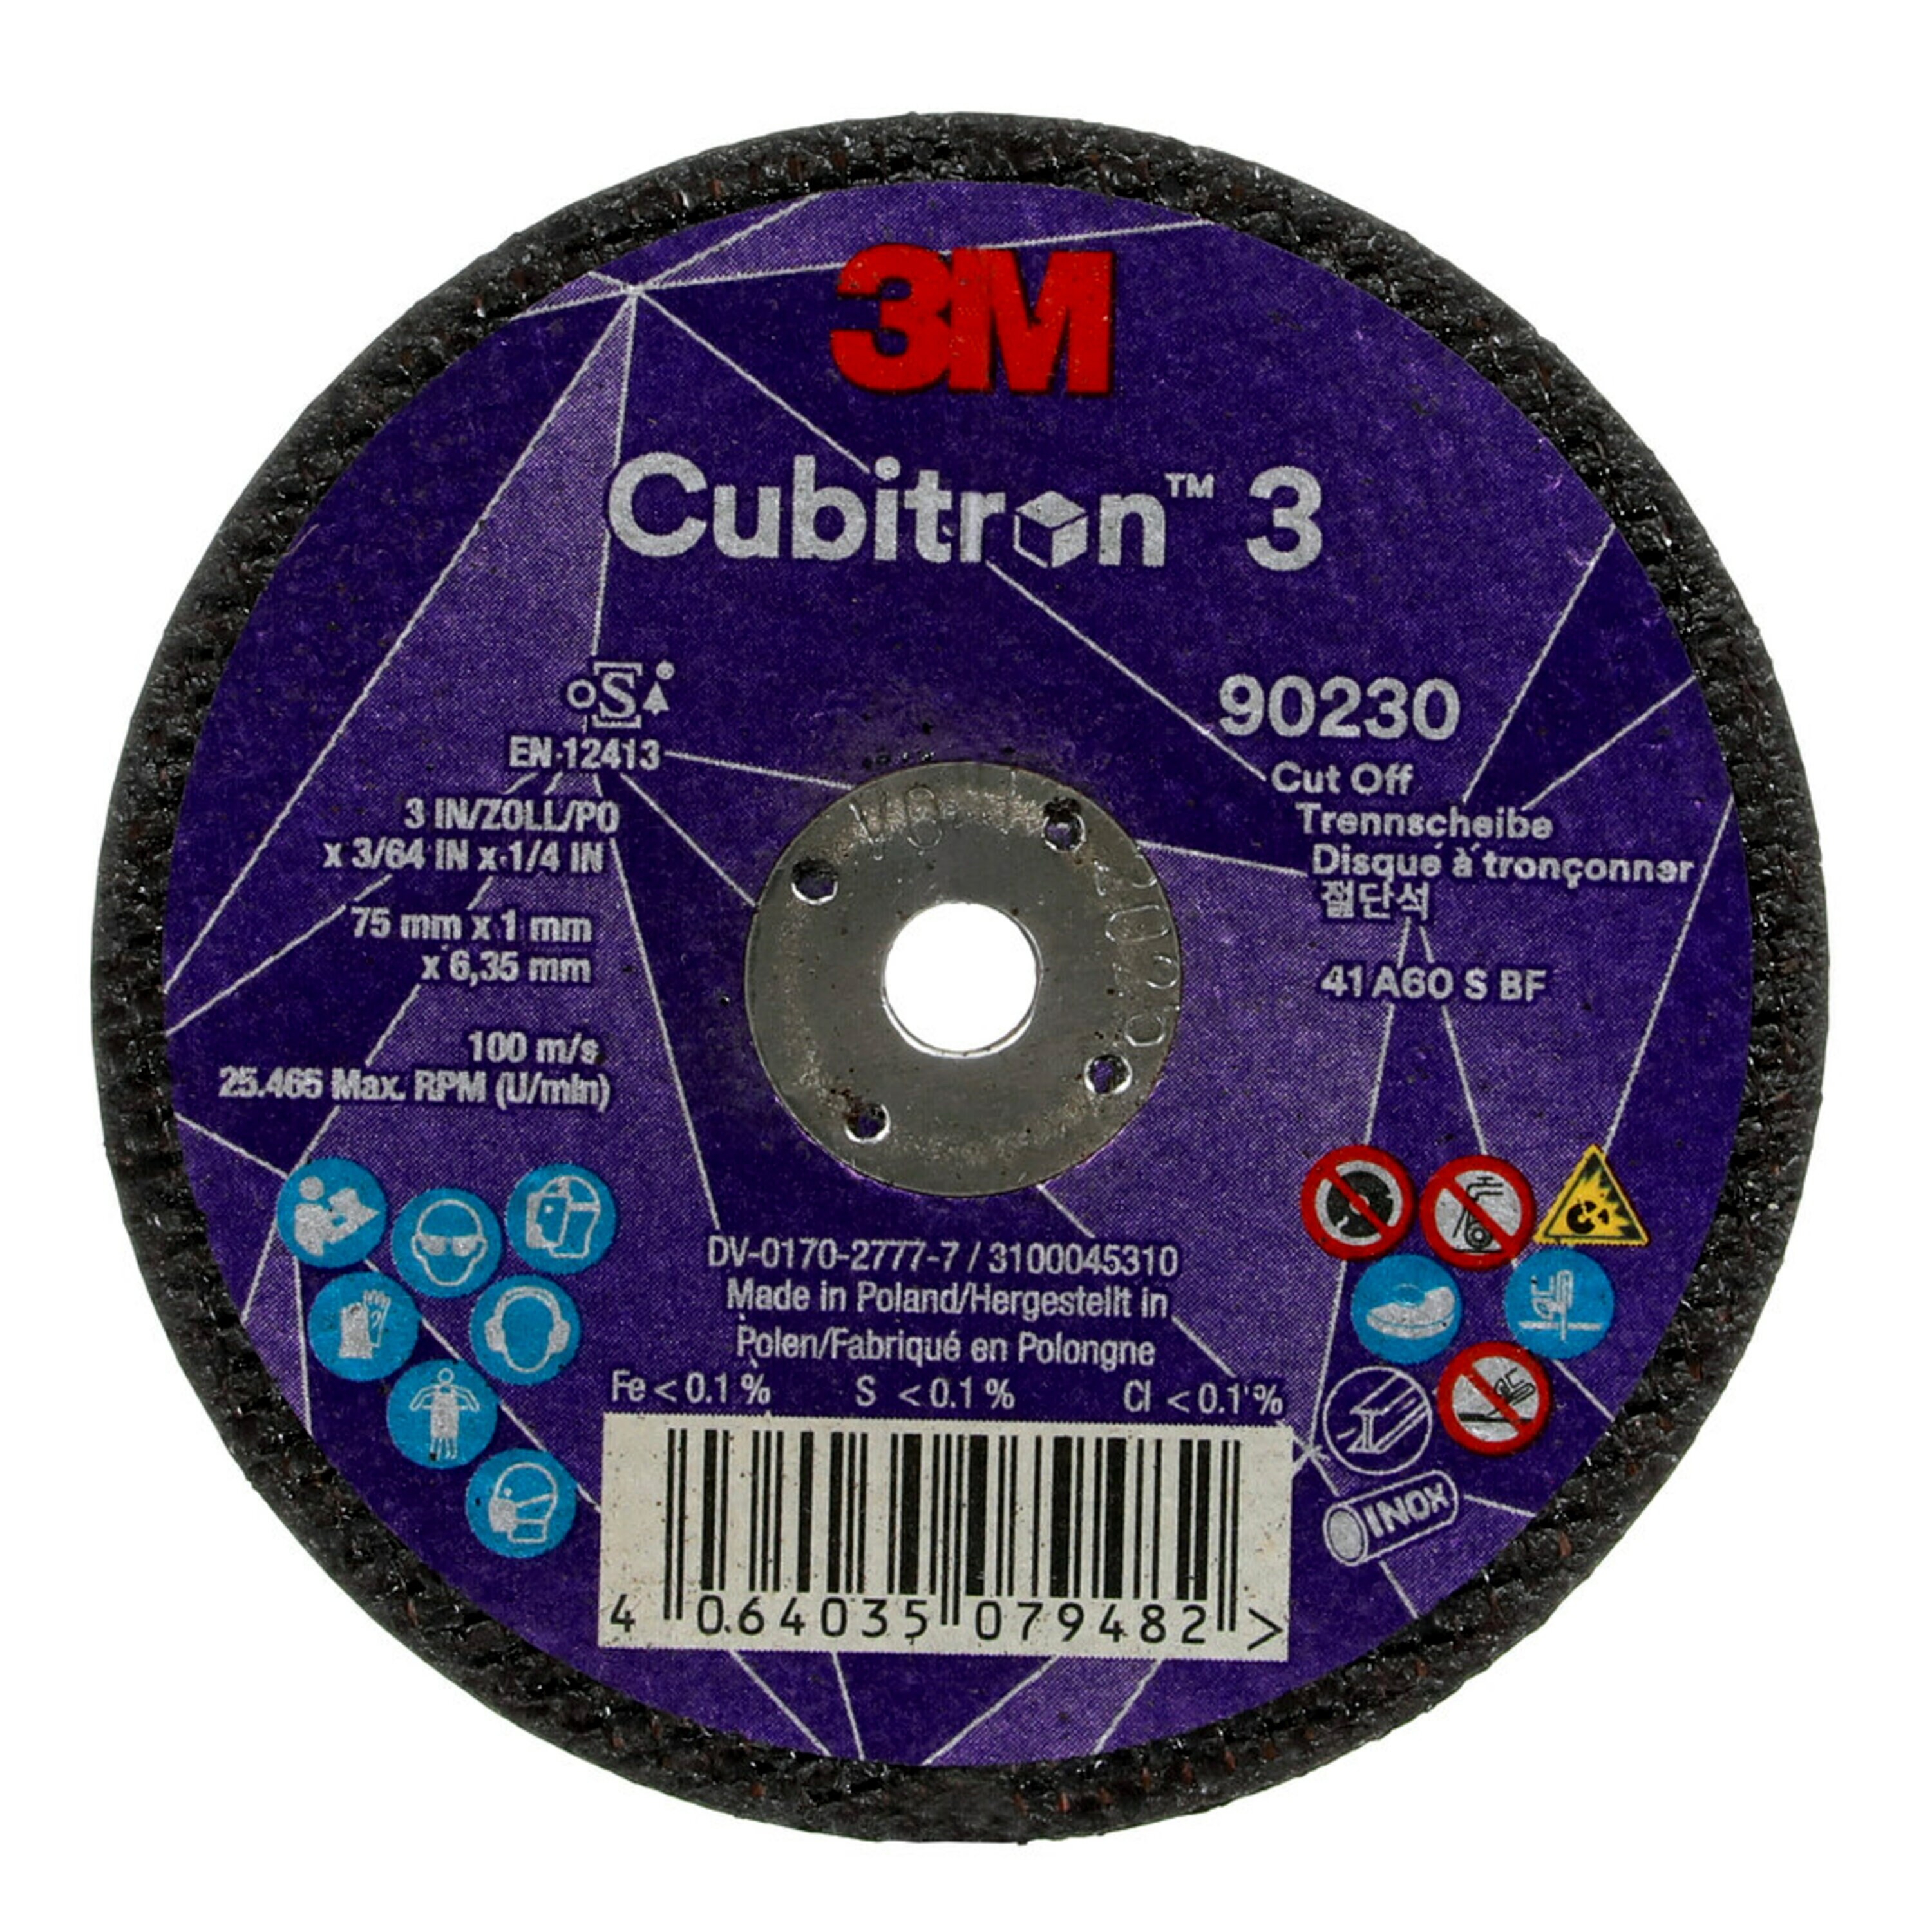 3M Cubitron 3 disco da taglio, 75 mm, 1 mm, 6,35 mm, 60 , tipo 41 #90230